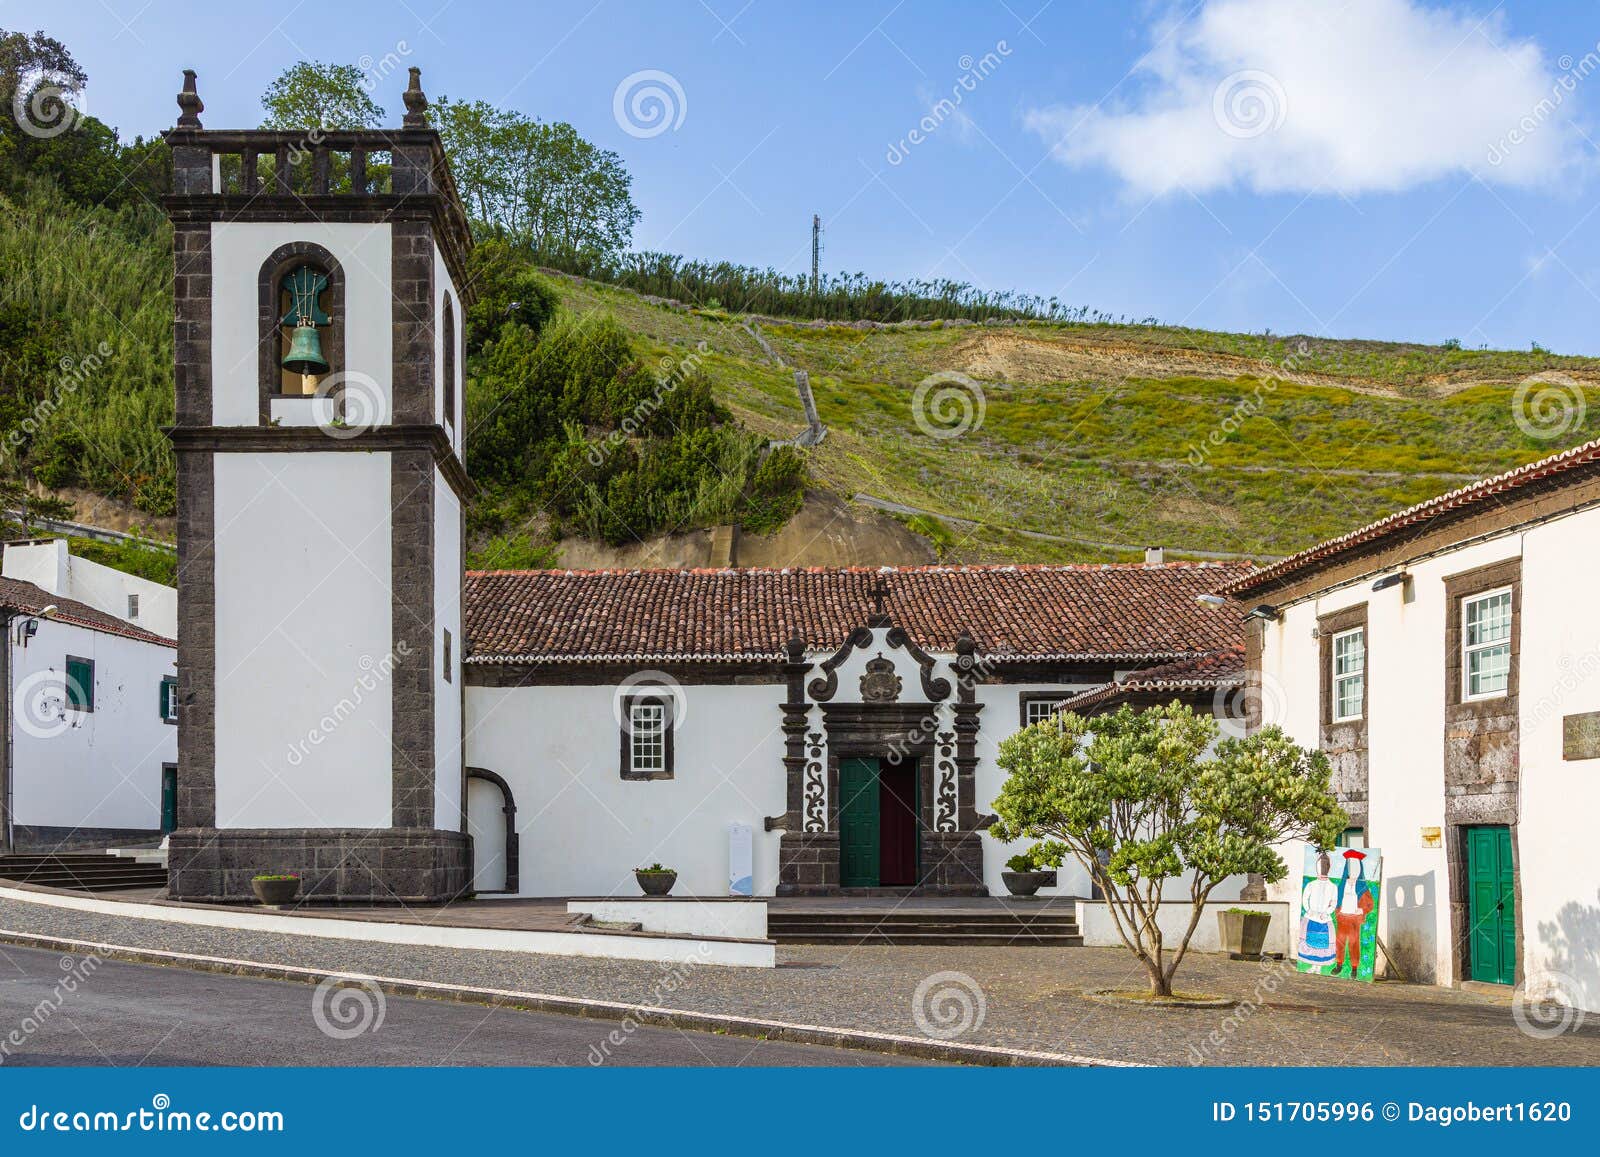 church and centro de turismo in povoacao on sao miguel island, azores